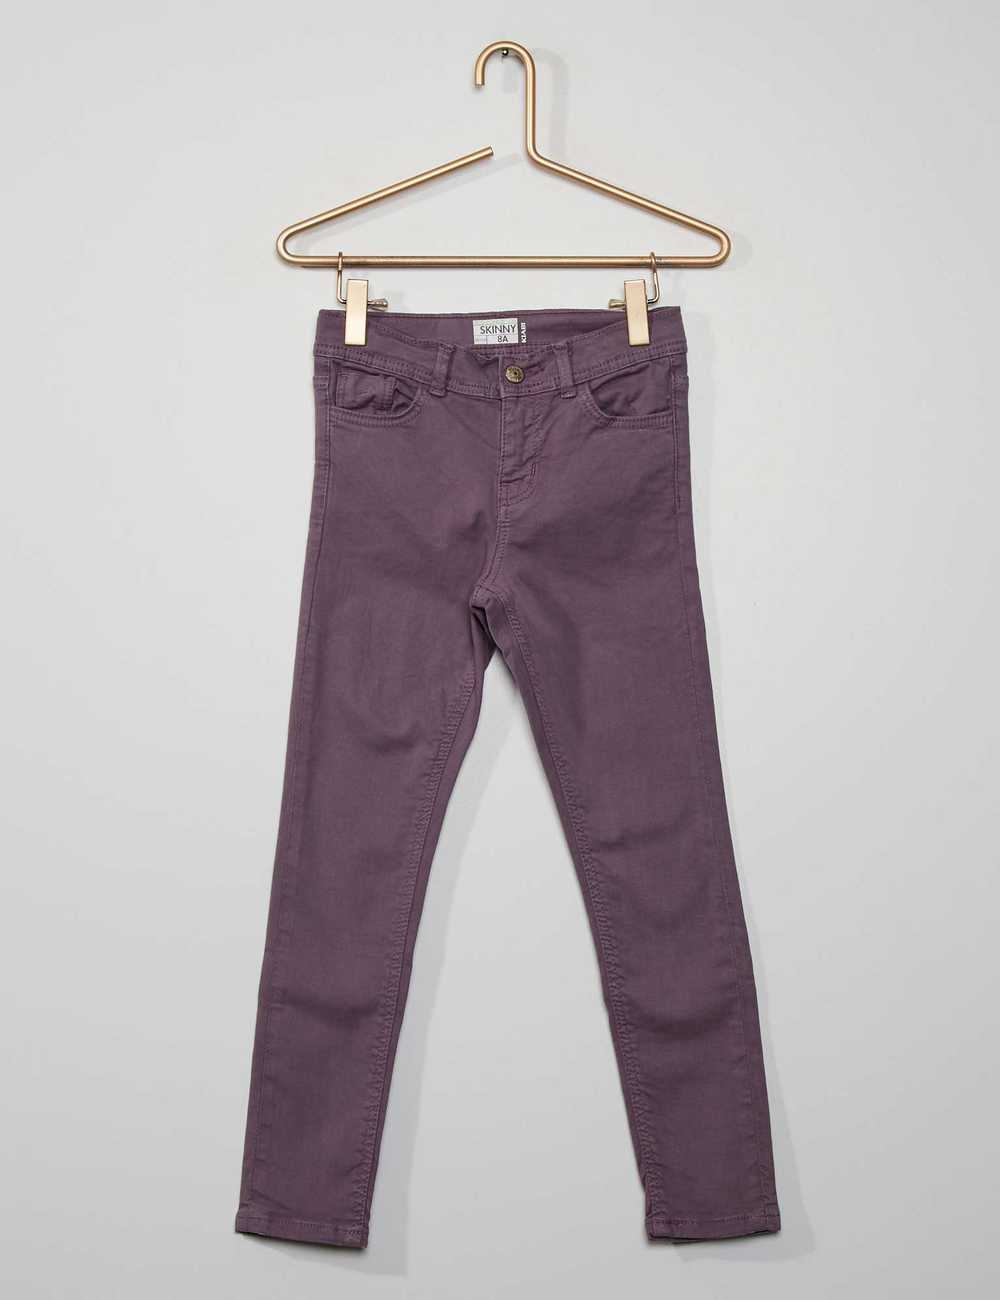 Buy Skinny trousers Online in Dubai & the UAE